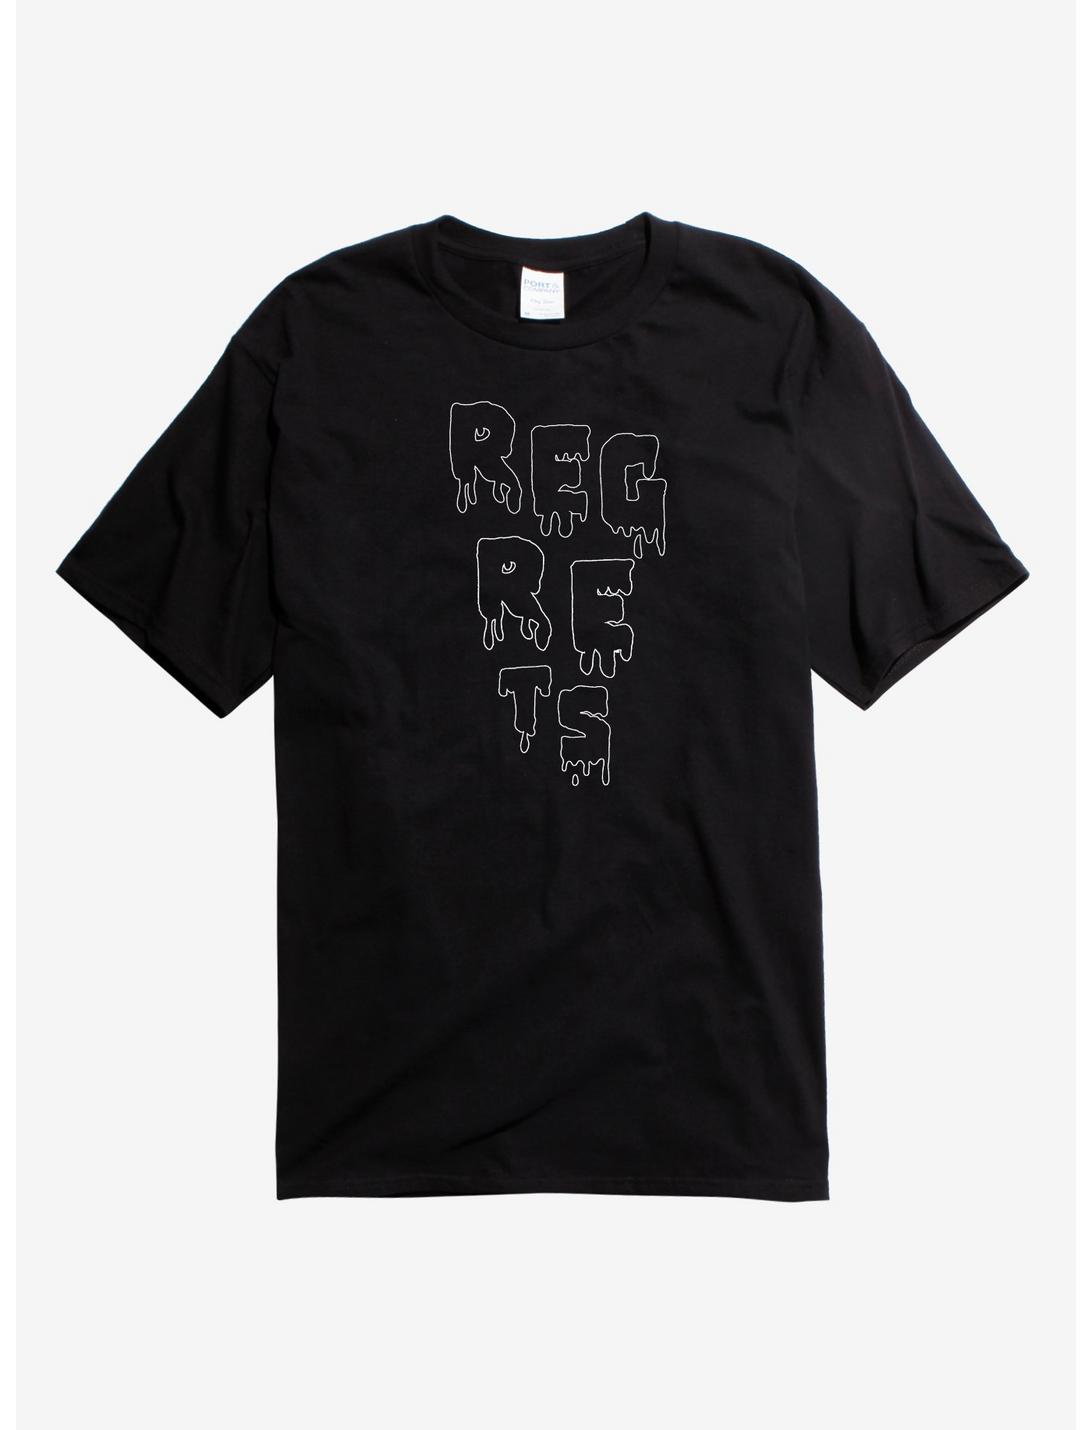 Reg-Re-Ts T-Shirt, BLACK, hi-res